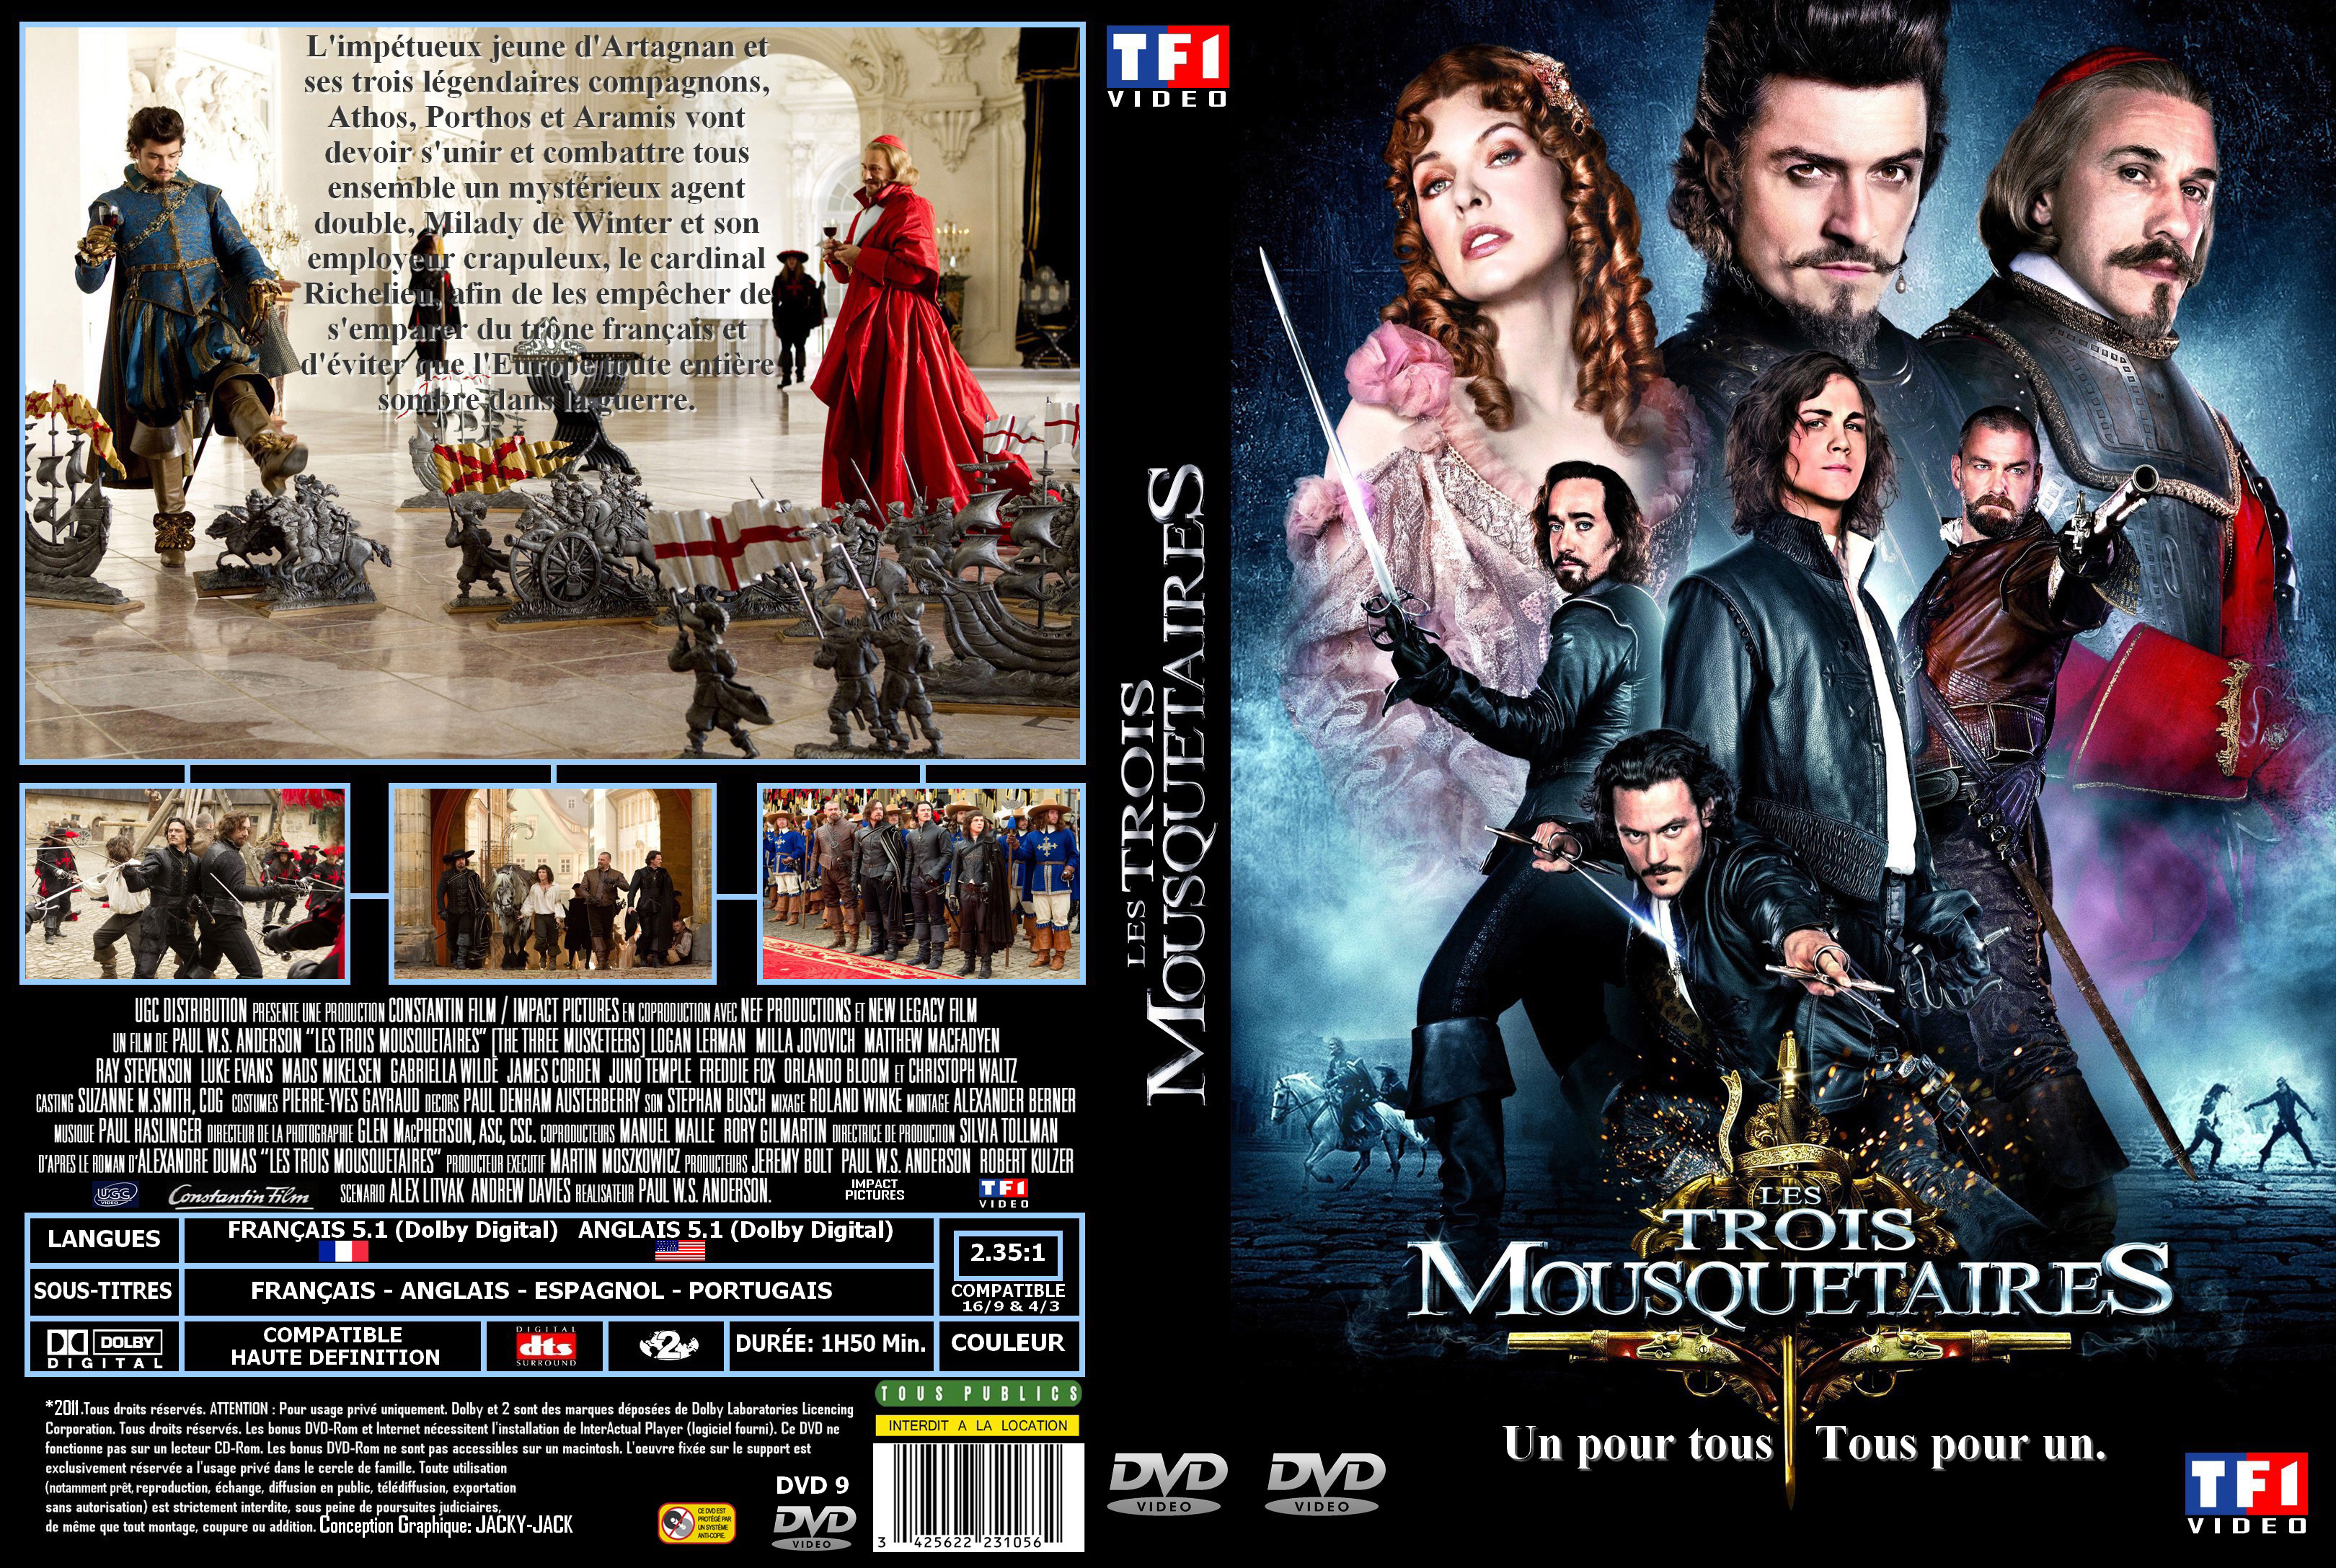 Jaquette DVD Les trois mousquetaires (2011) custom